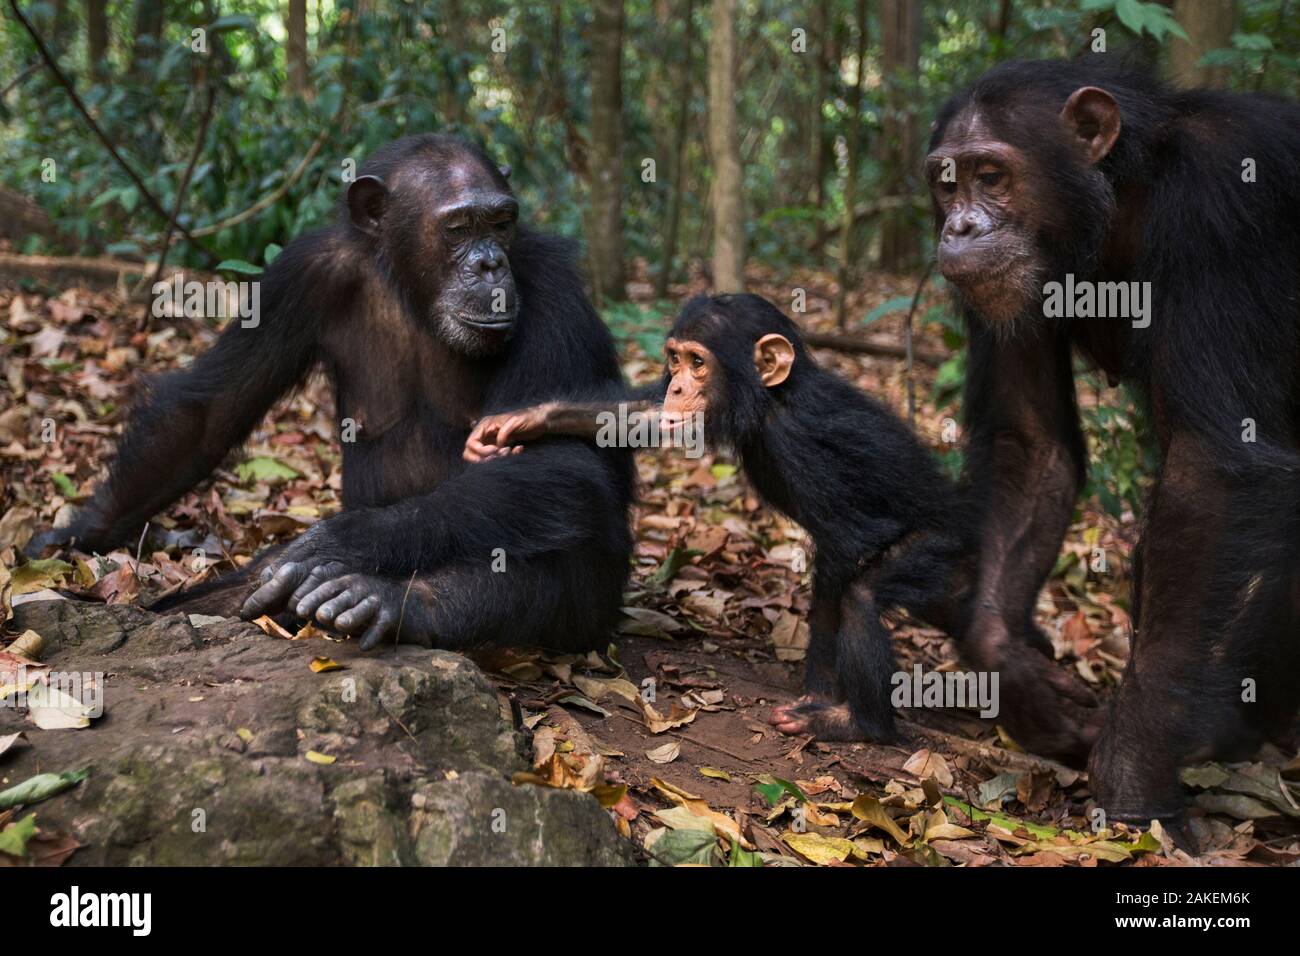 L'Est de chimpanzé (Pan troglodytes) schweinfurtheii "Gaia" des femmes âgées de 20 ans avec sa sœur 'Golden' âgés de 15 ans et nièce 'glamour' de 2 ans.Le Parc National de Gombe, en Tanzanie. Septembre 2013. Banque D'Images